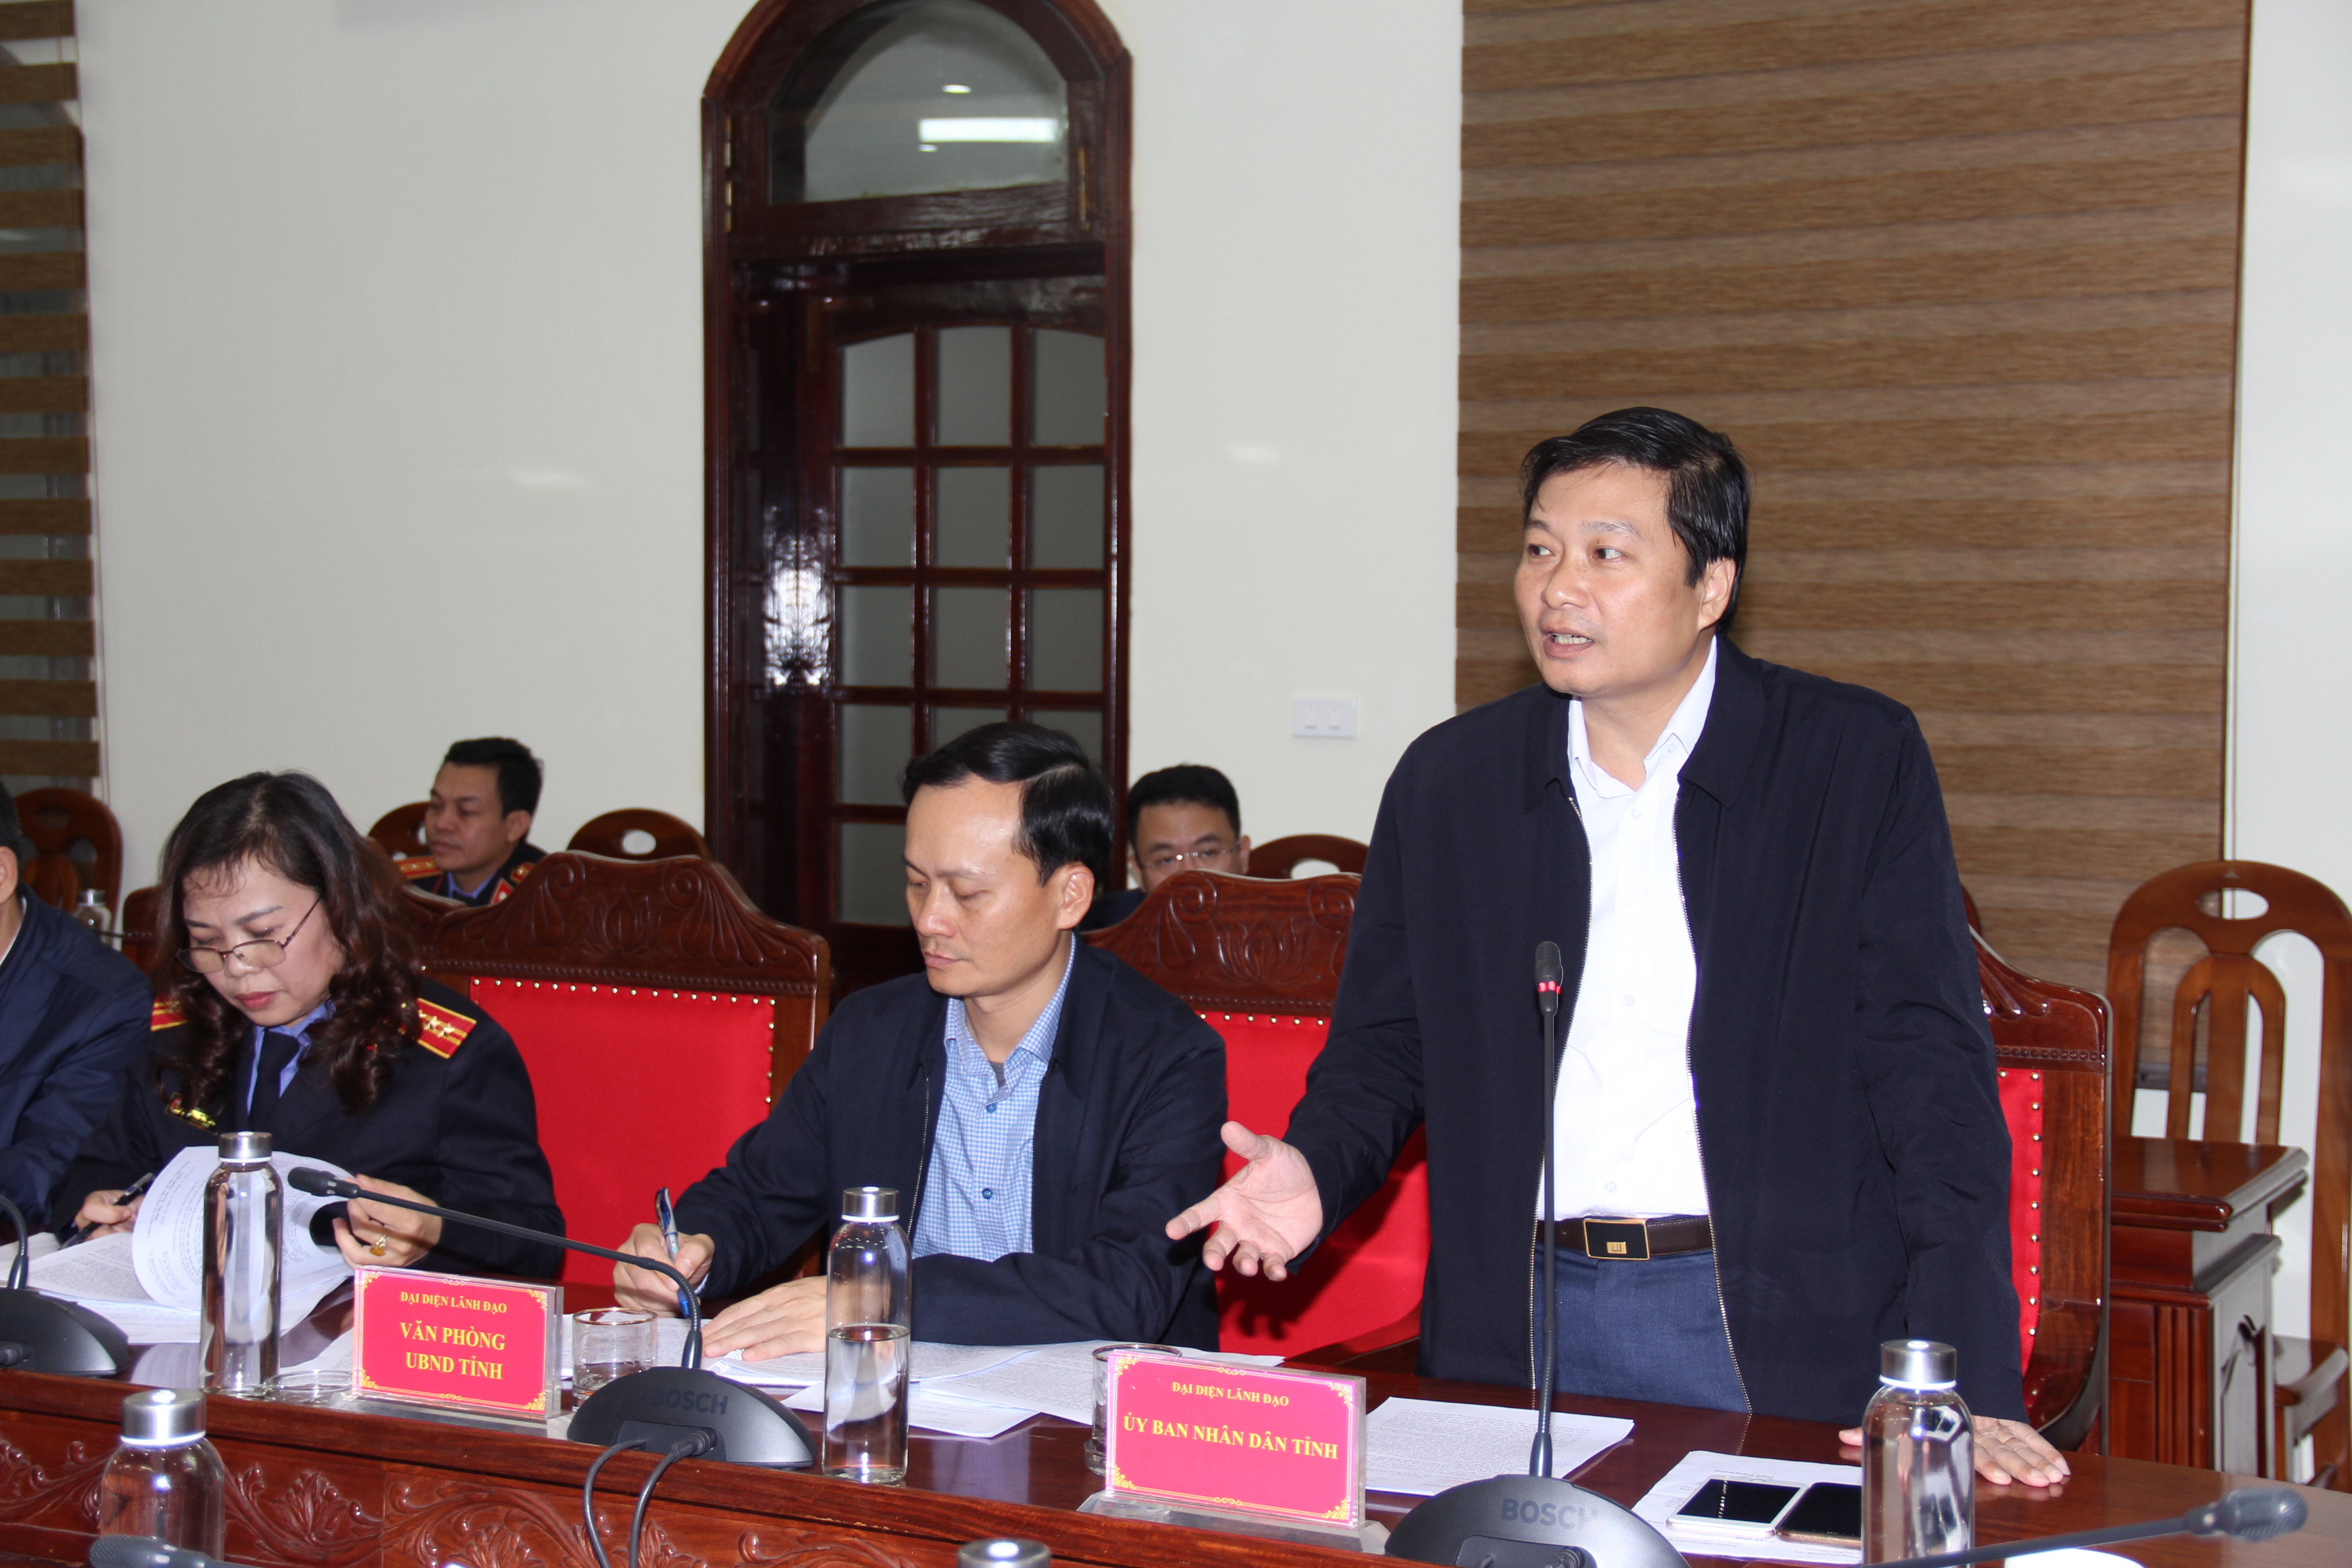 Phó Chủ tịch UBND tỉnh Lê Hồng Vinh nêu các ý kiến về xử lý các vụ việc khiếu kiện kéo dài, đề nghị các hướng xử lý dứt điểm. Ảnh: Hoài Thu